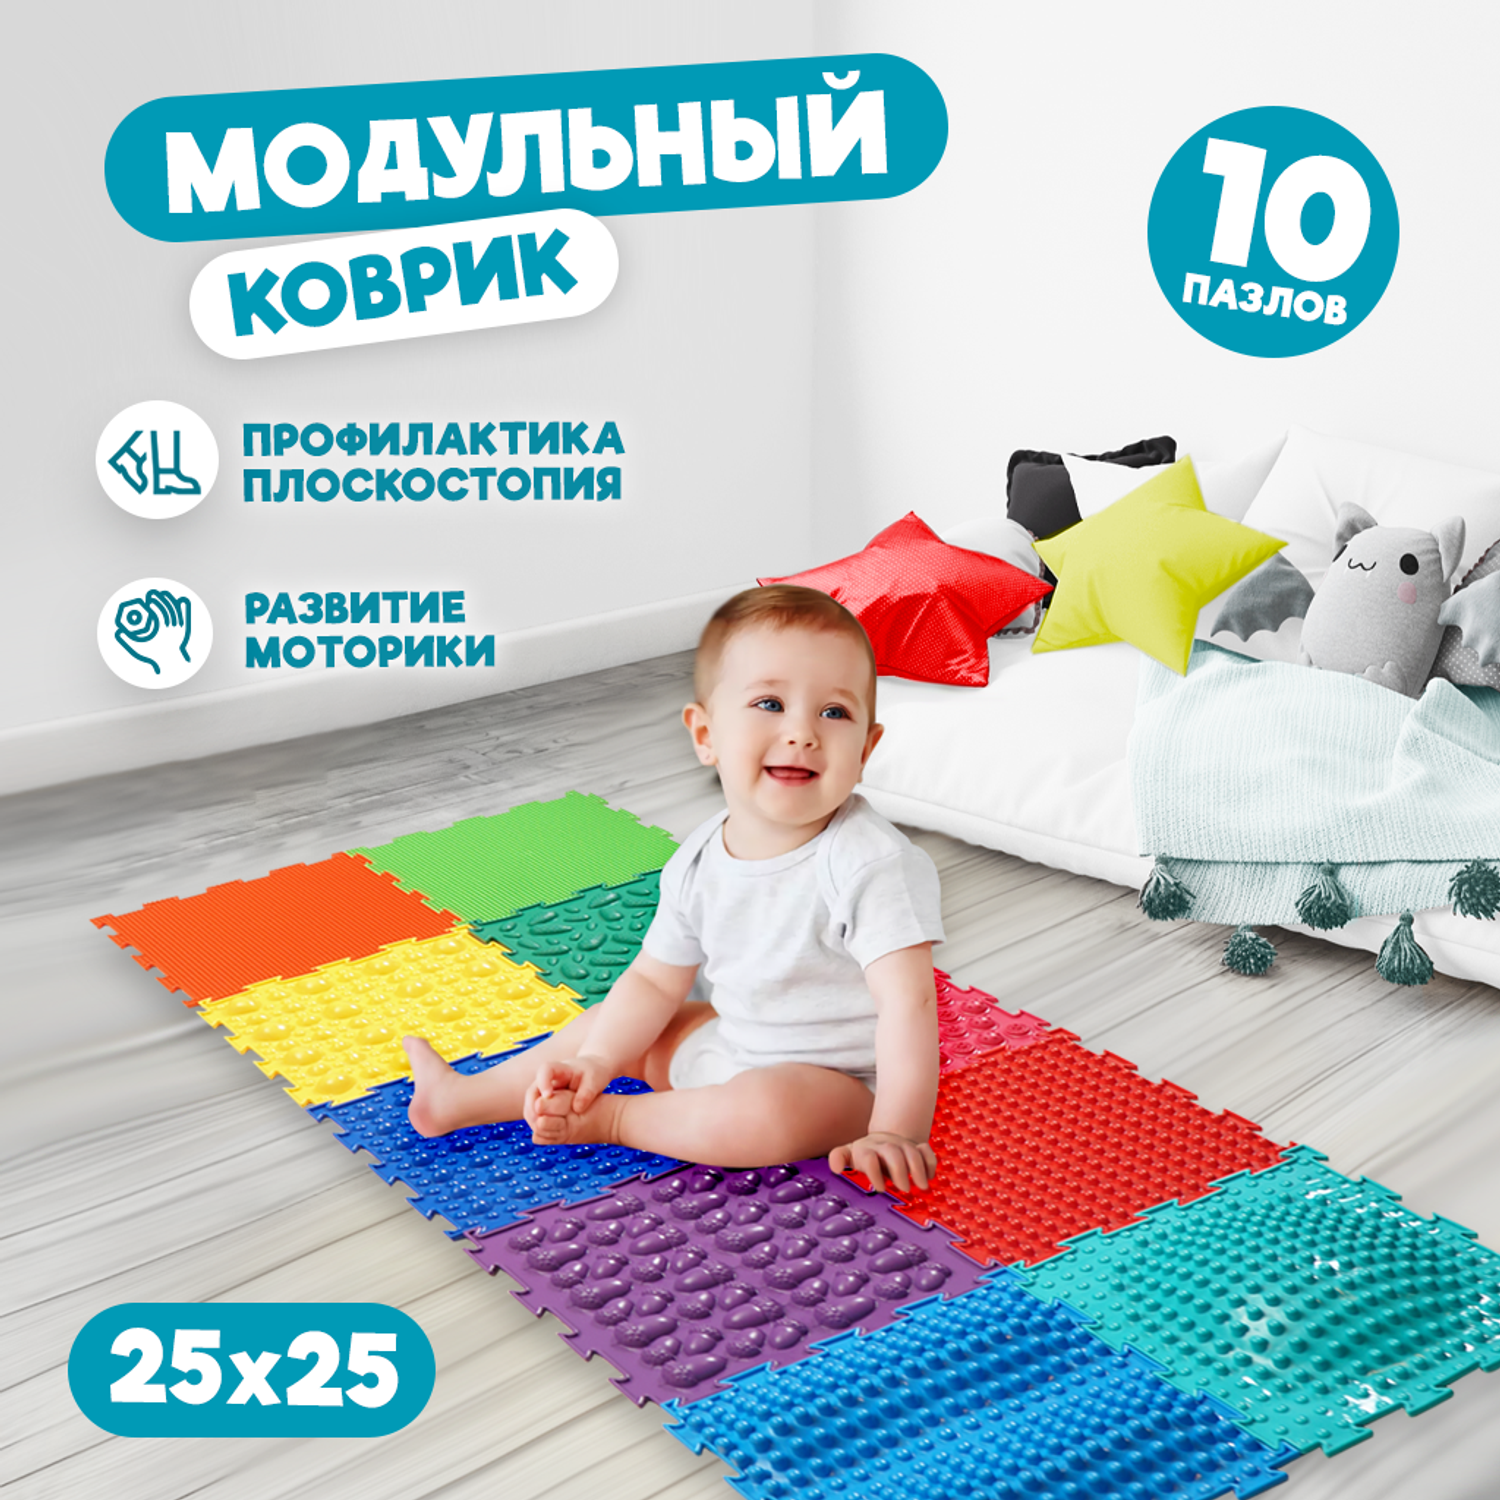 Одеяла и подушки – купить по ценам от производителя в Санкт-Петербурге